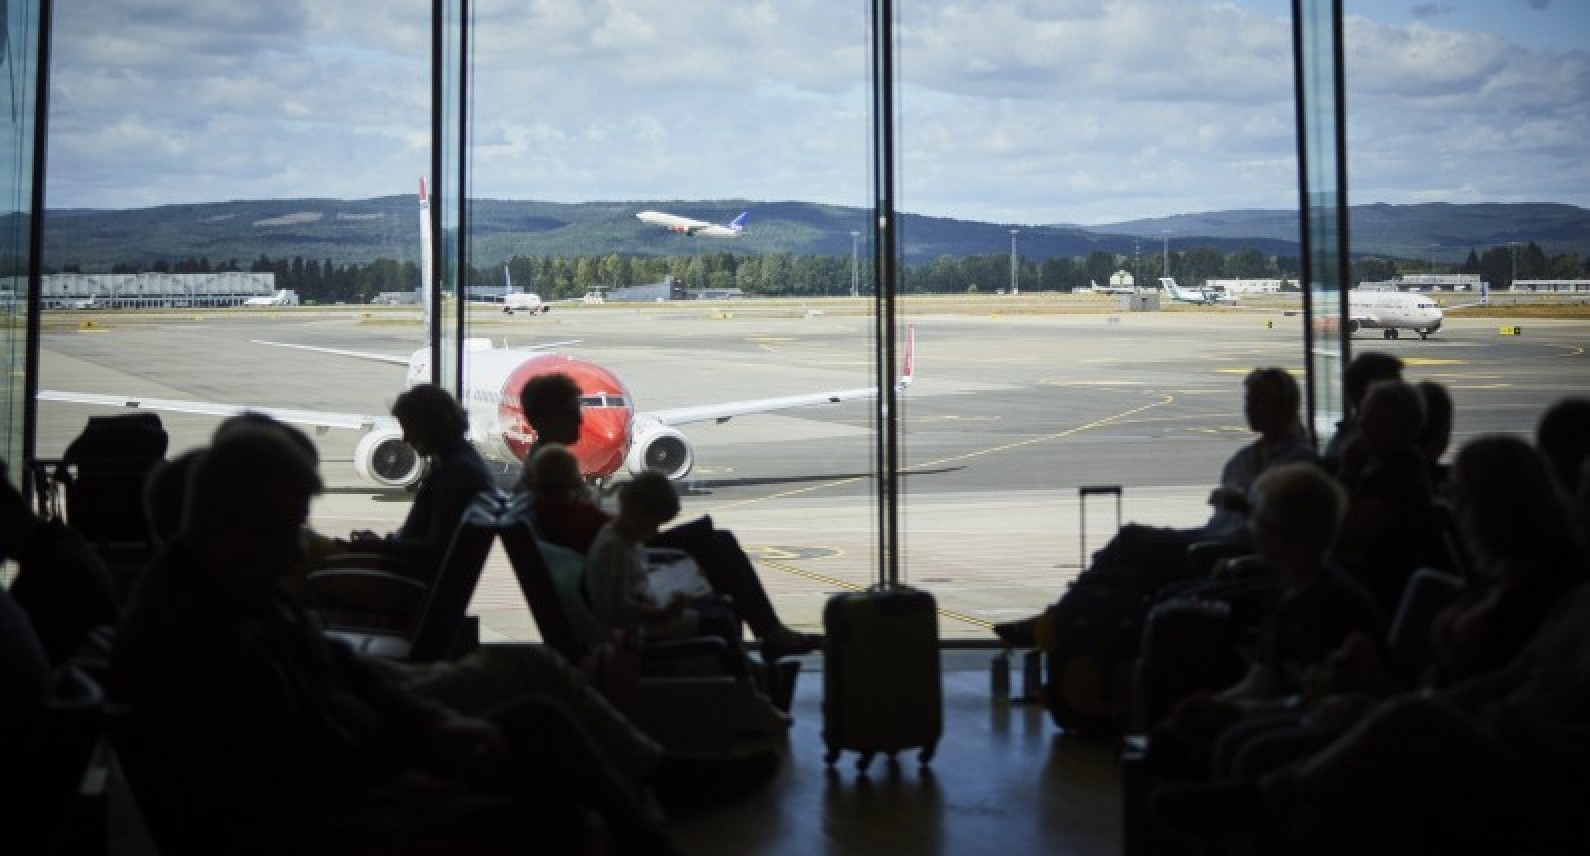 Kolejny dzień olbrzymich kolejek w Gardermoen: podróżujący korzystają z nowych przepisów